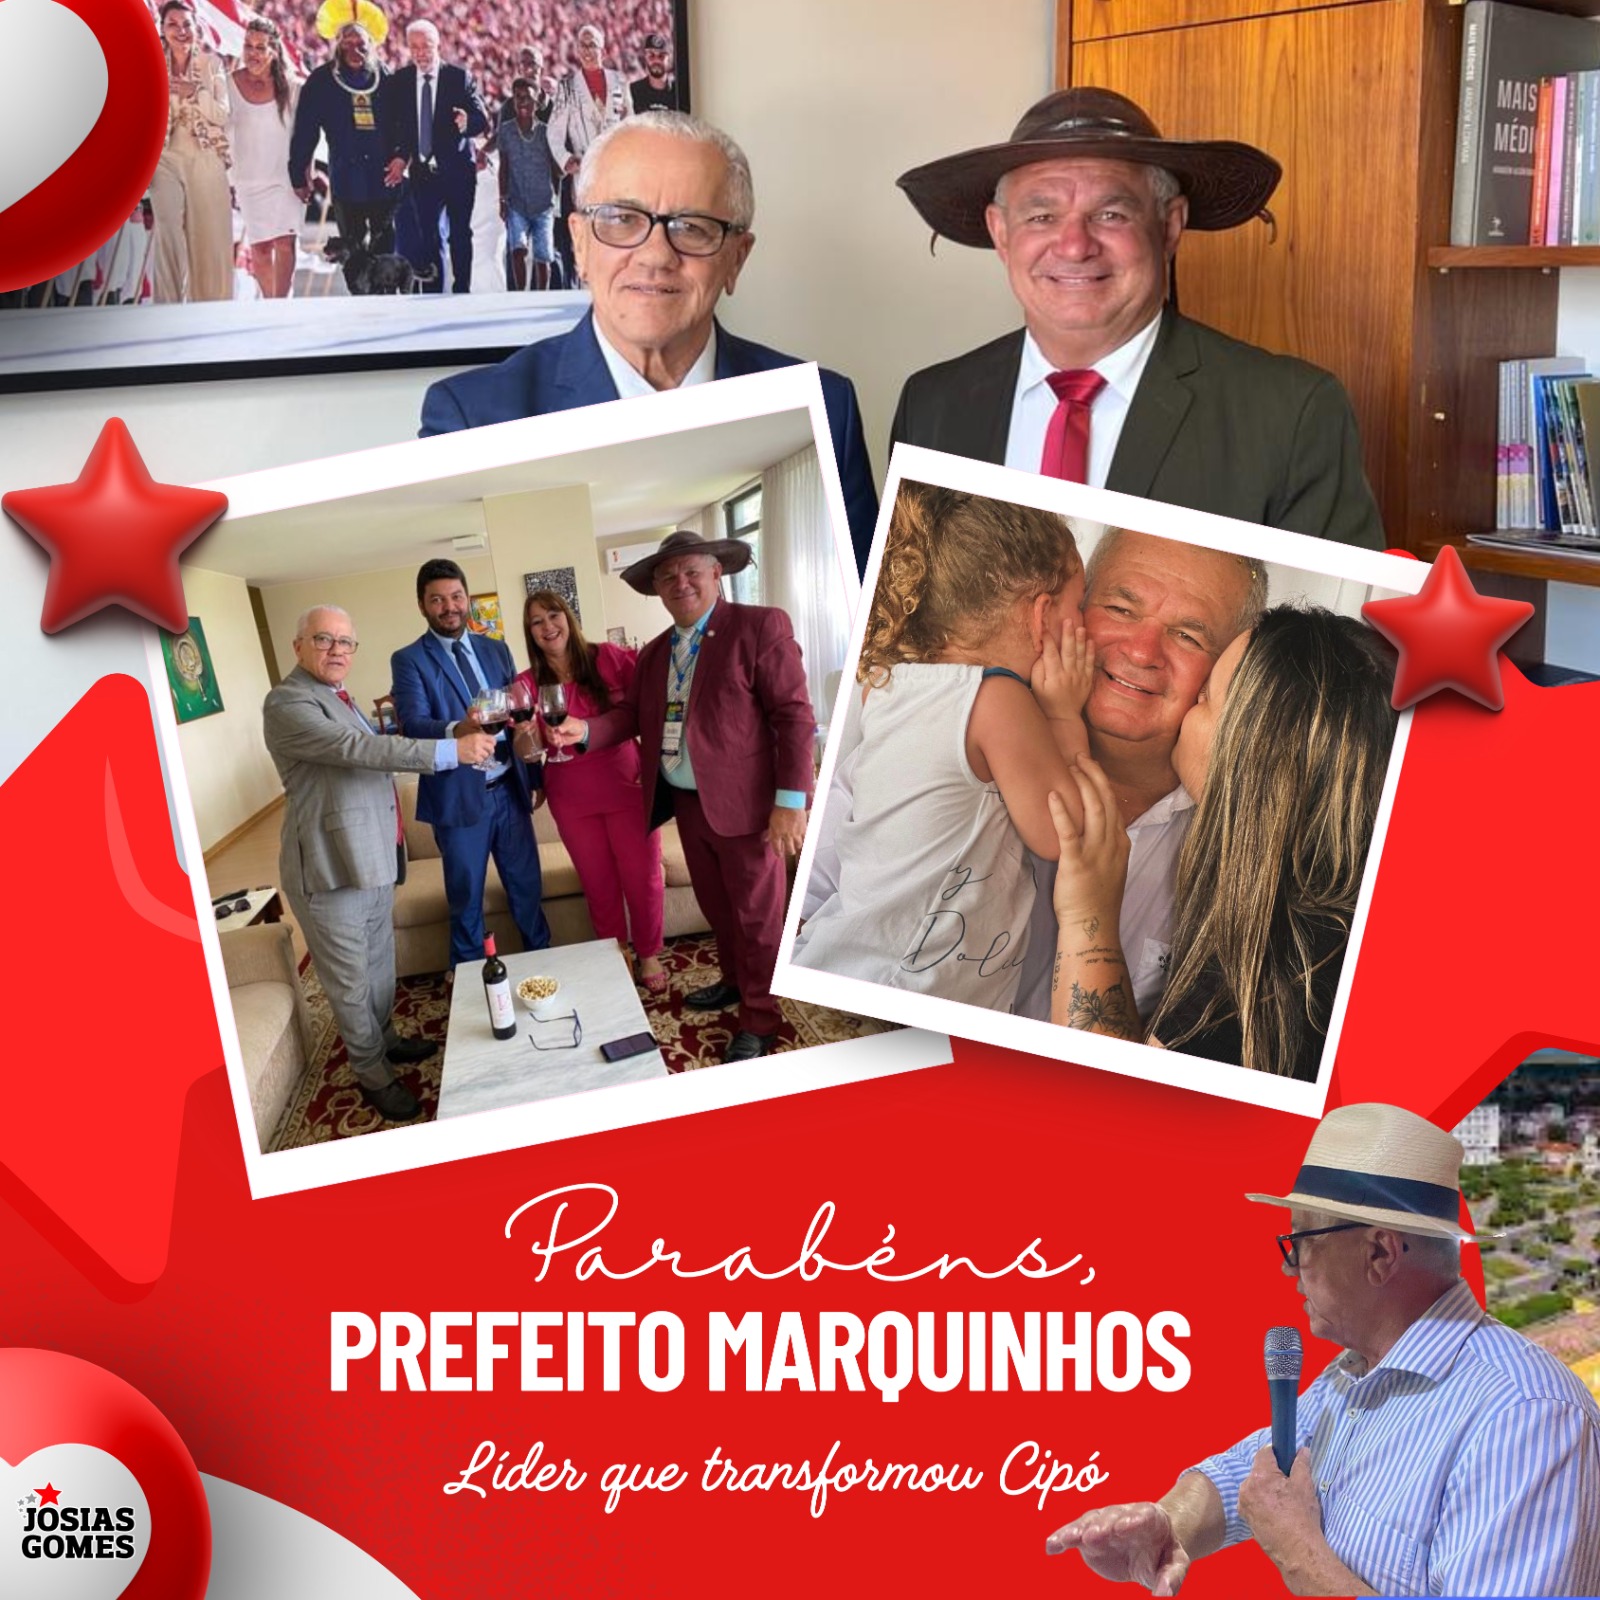 Parabéns, Prefeito Marquinhos!